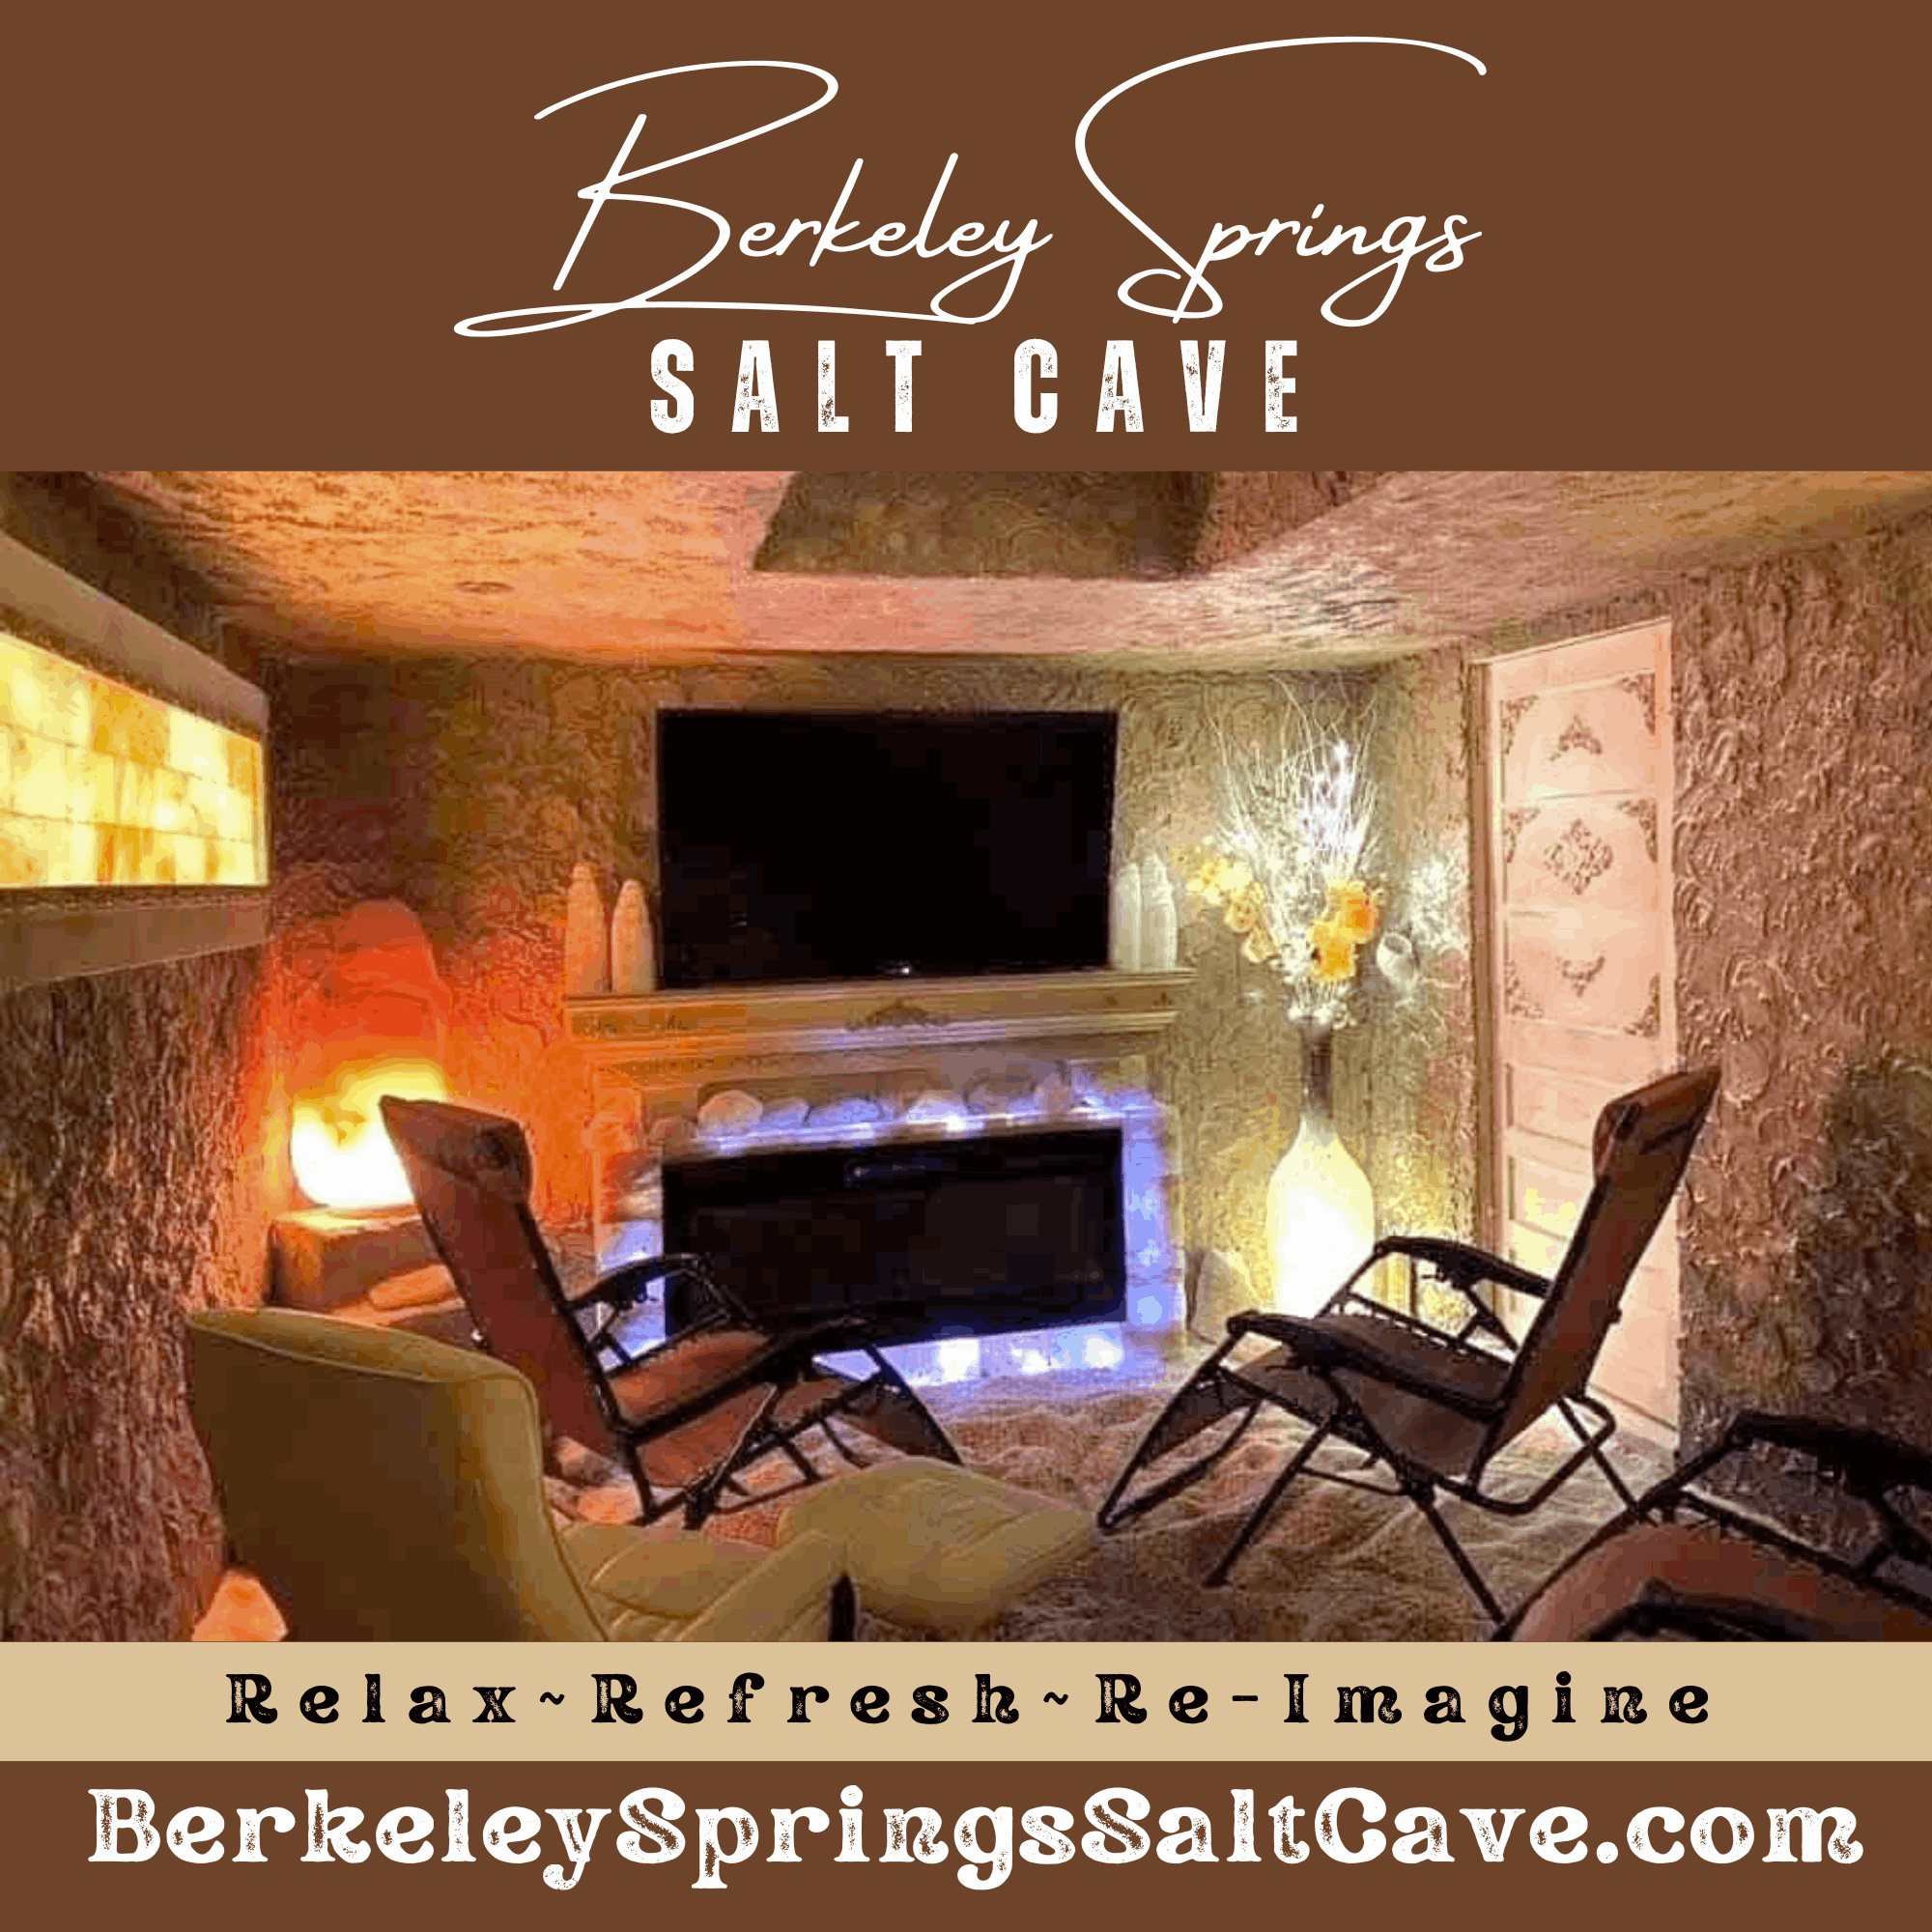 Berkeley Springs Salt Cave